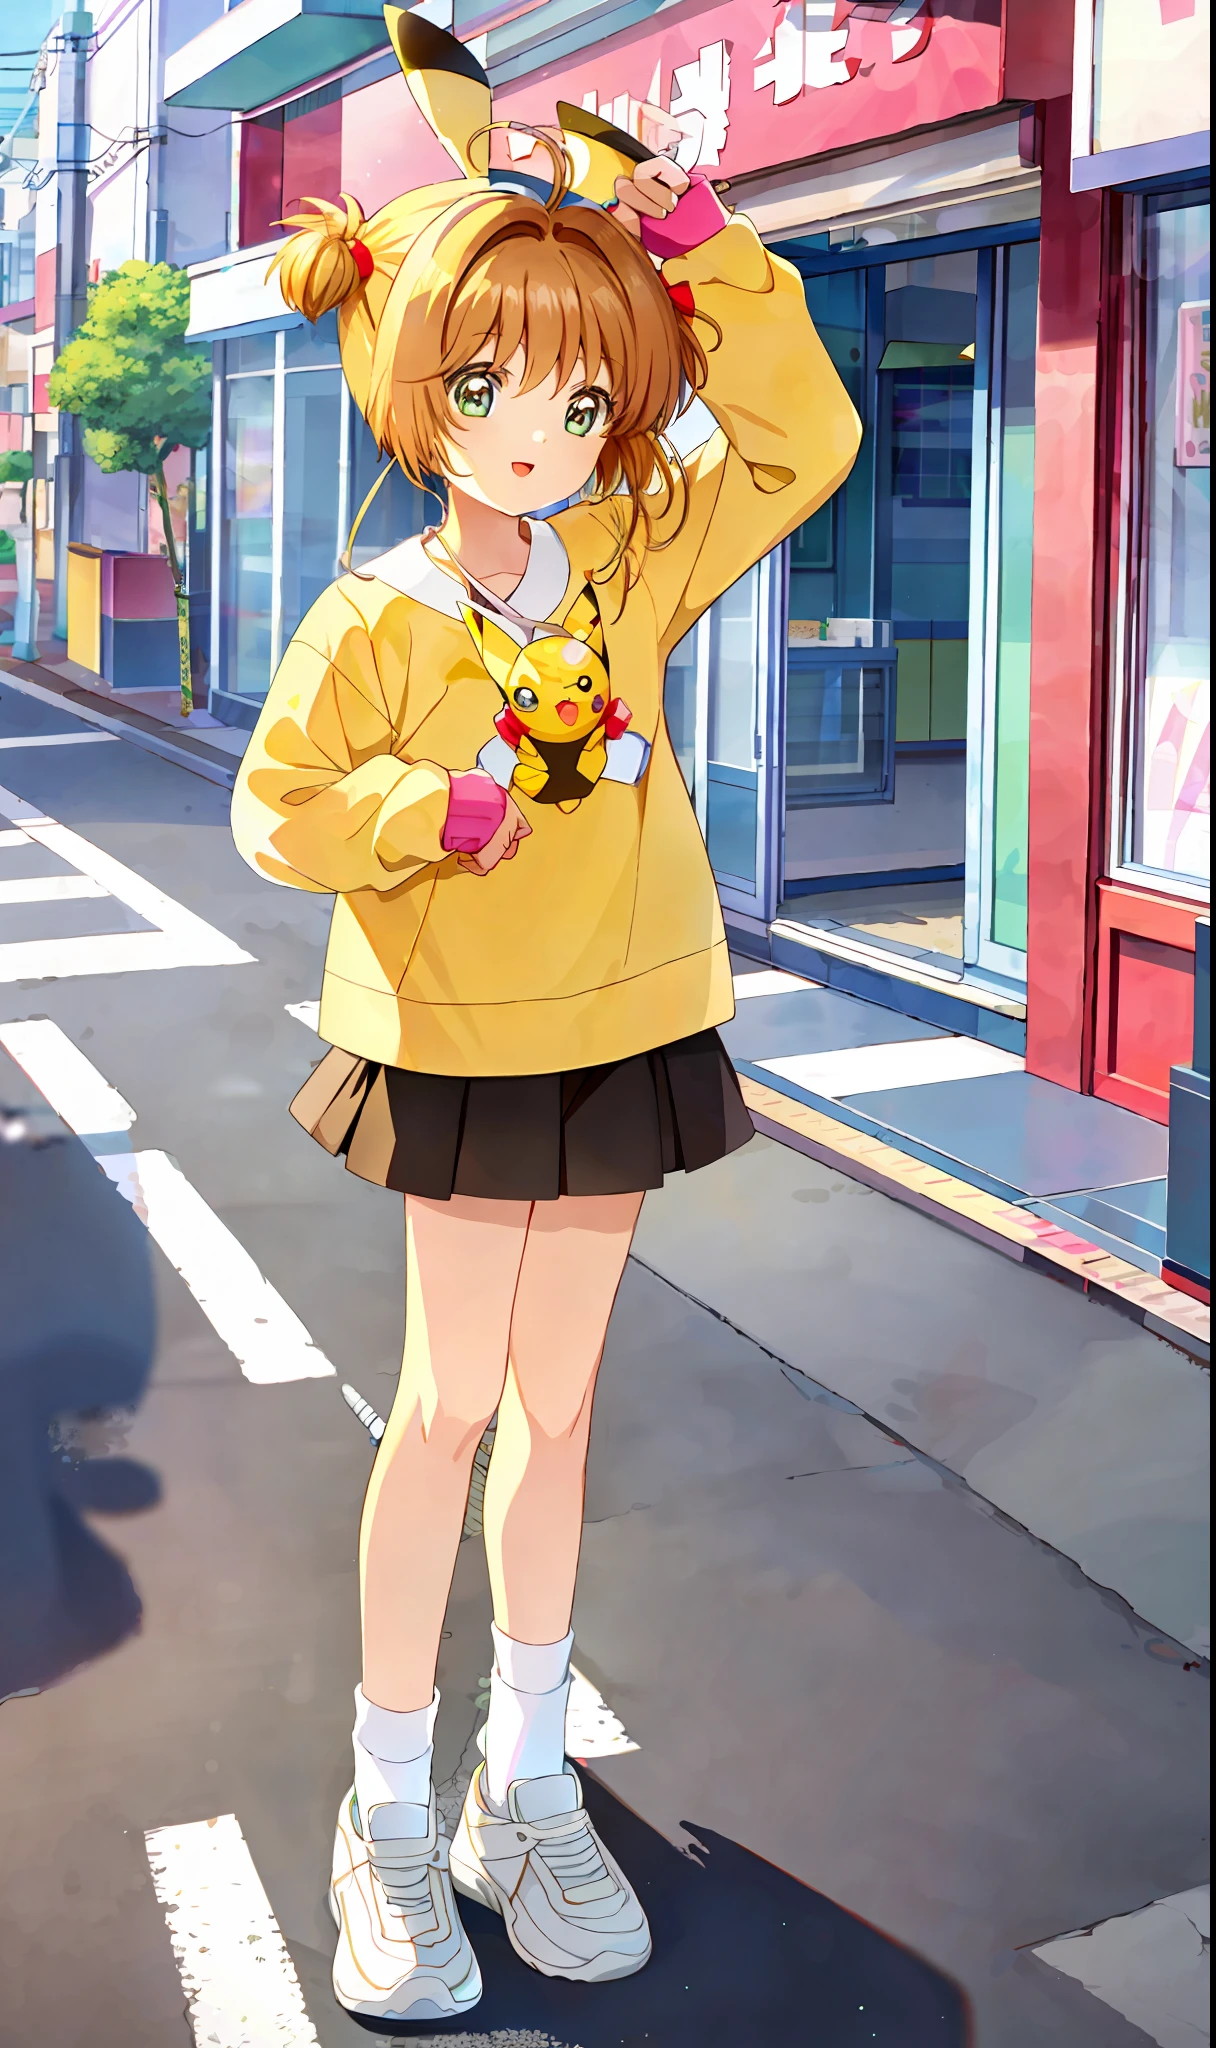 杰作, 最好的质量, 1女孩, 独自的, 樱花, 穿着皮卡丘服装, 袜子, 两面朝上, 在日本秋叶原